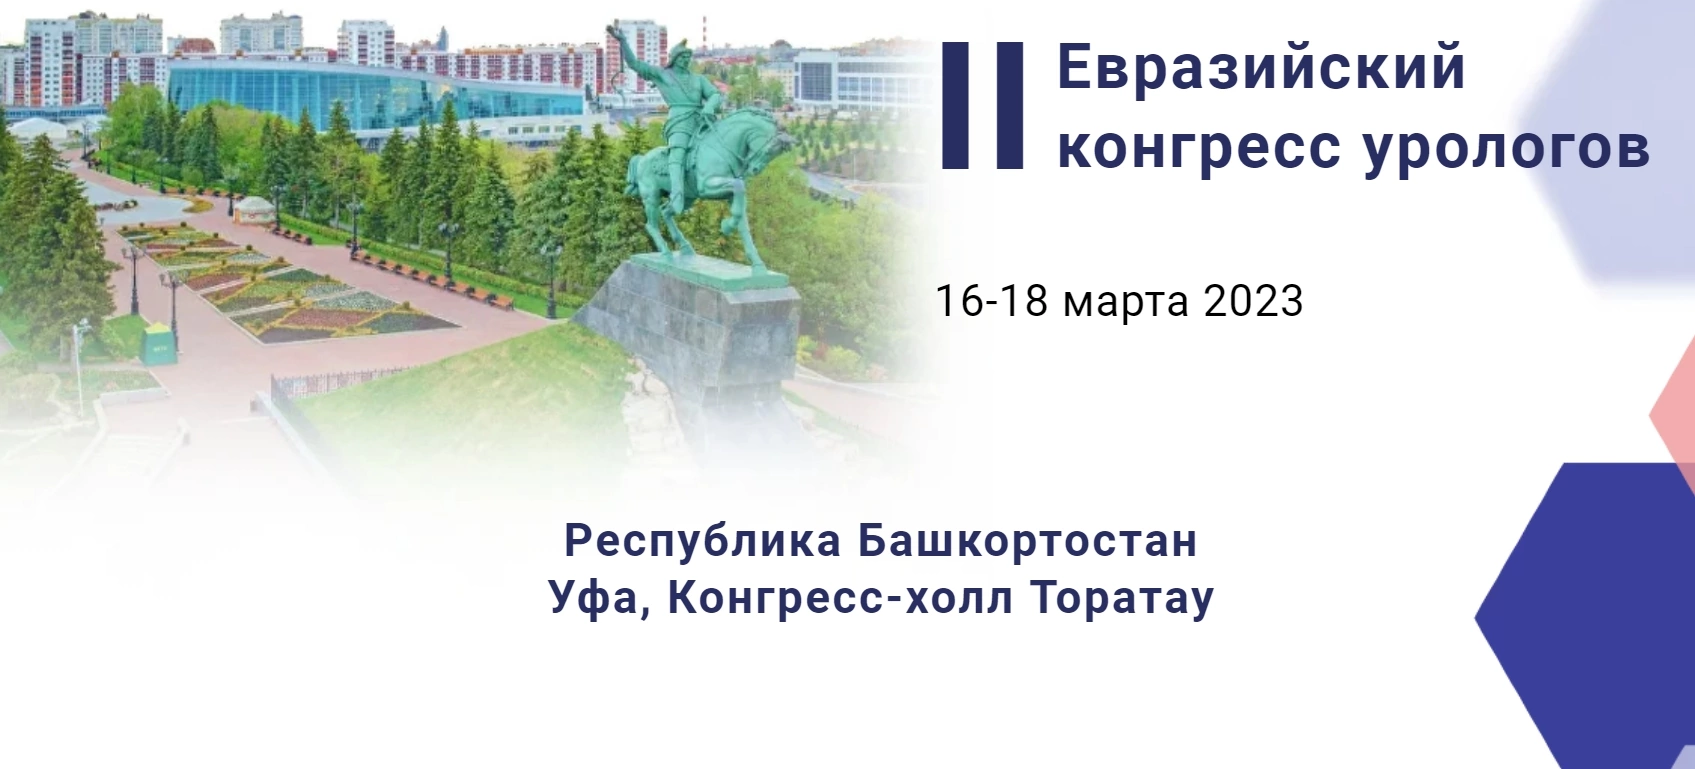 16-18 марта 2023 года в Уфе пройдет II Евразийский конгресс урологов